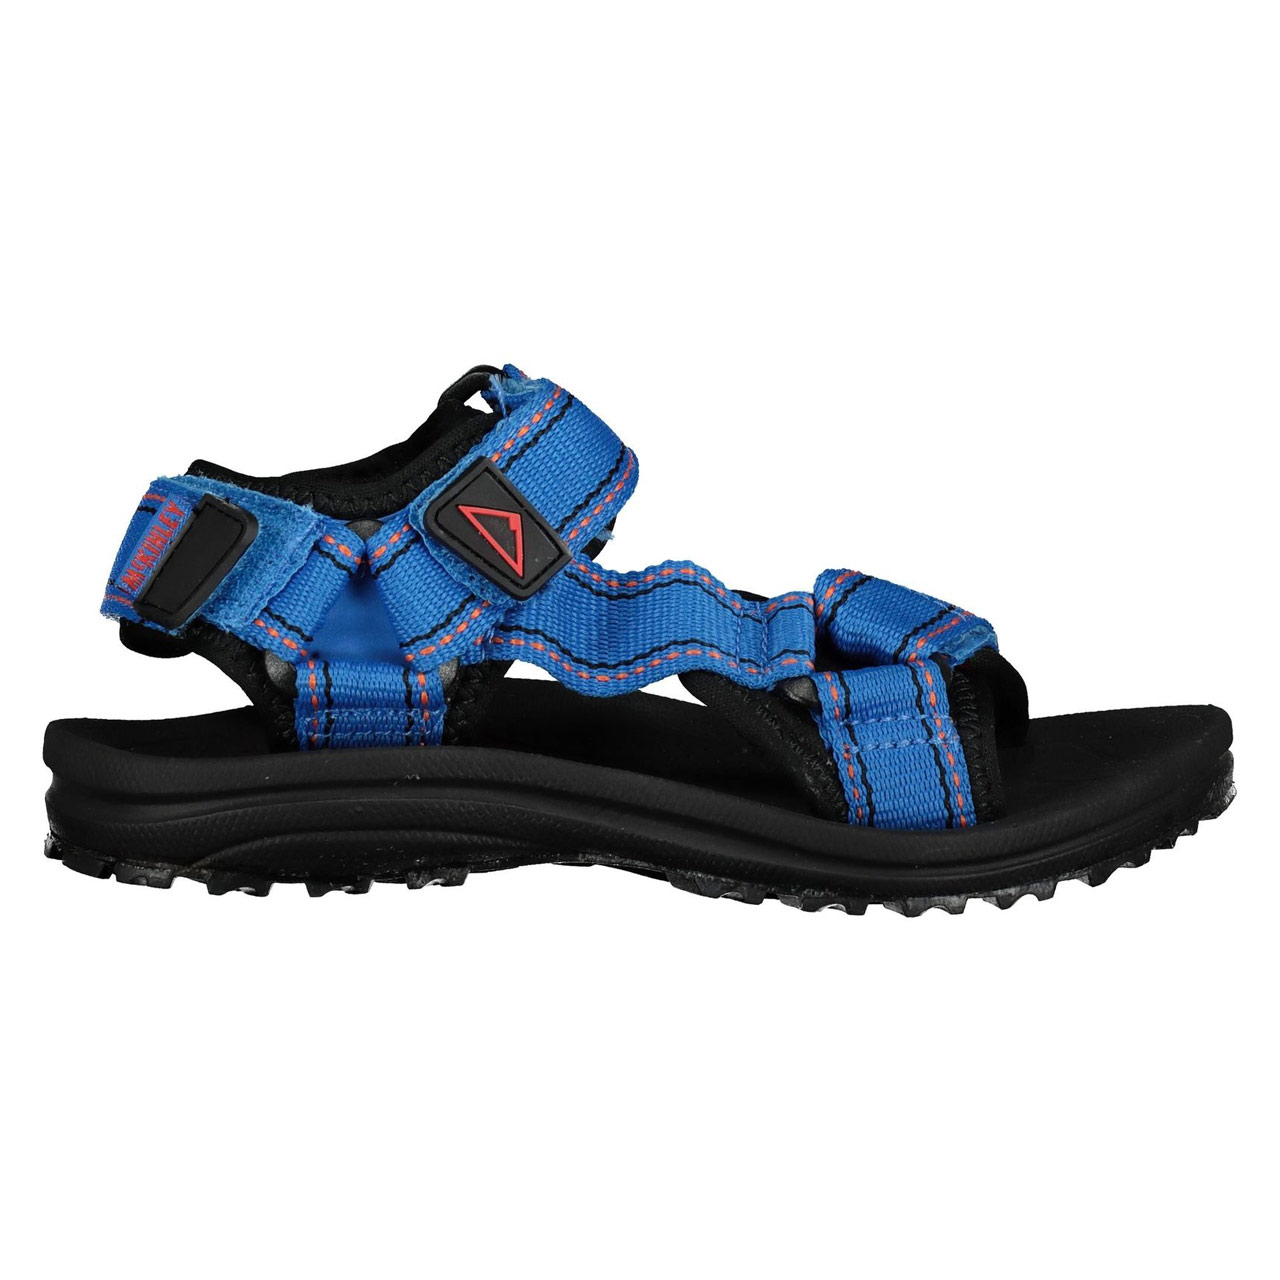 McKinley Kinder Freizeit-Trekking-Outdoor-Sandale Cayman blau-schwarz 288359 901 